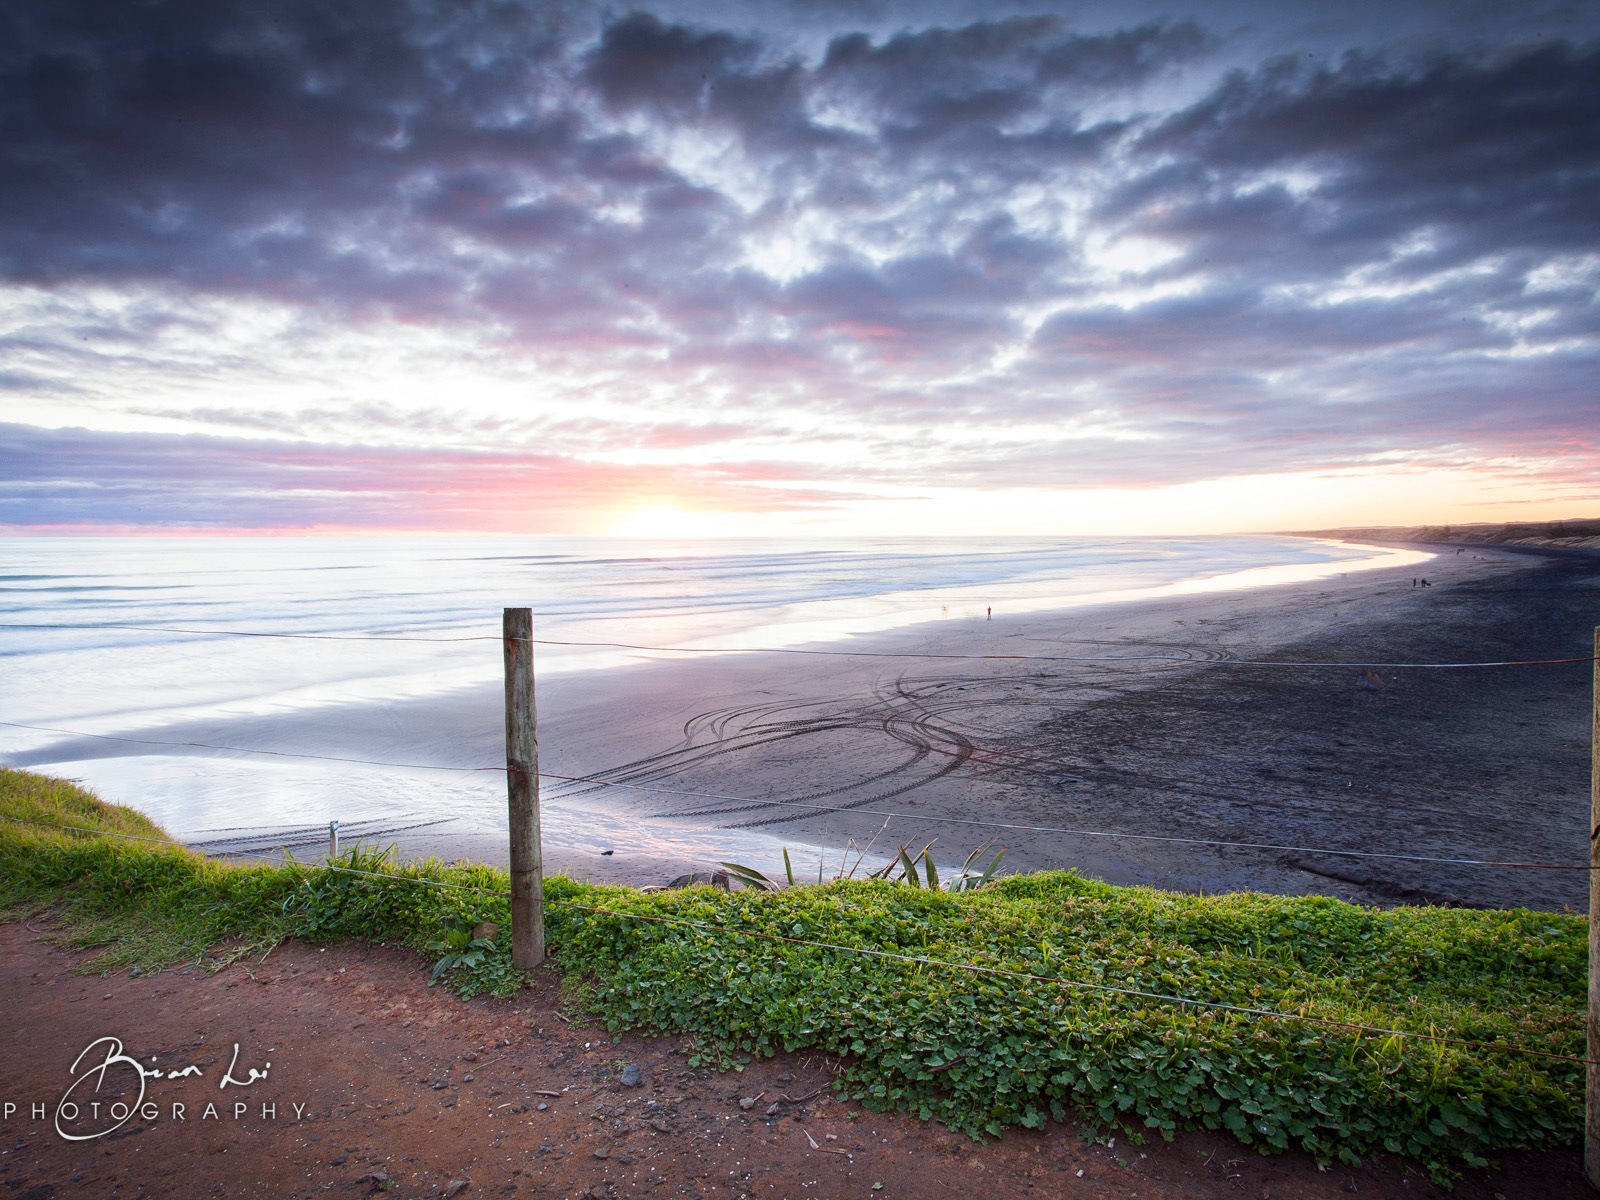 Nouvelle-Zélande Île du Nord de beaux paysages, Windows 8 fonds d'écran thématiques #16 - 1600x1200